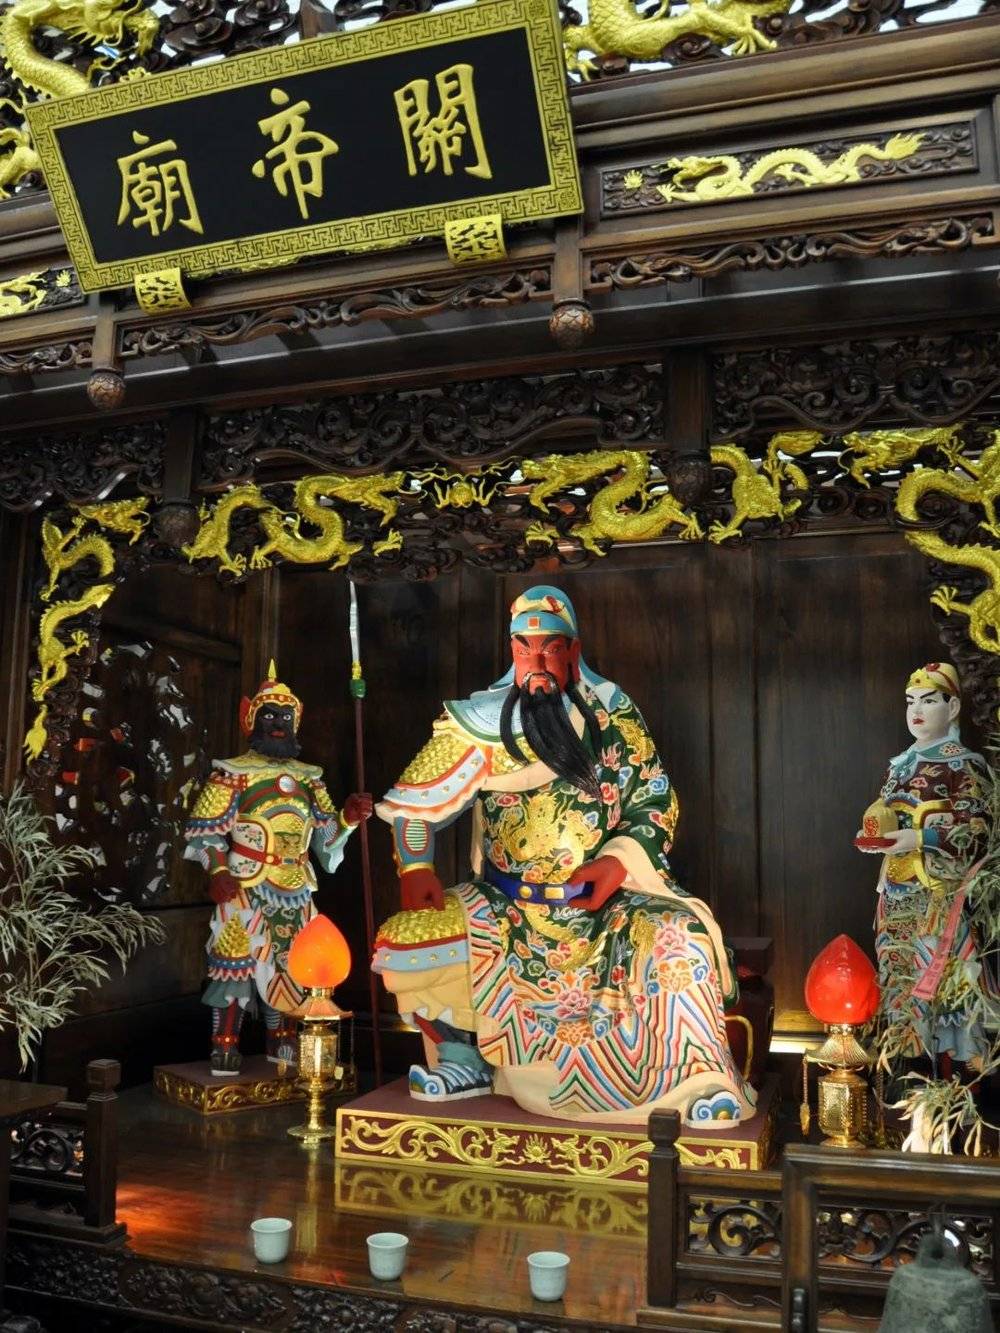 日本大阪市关帝庙内的关羽神像。/Wiki